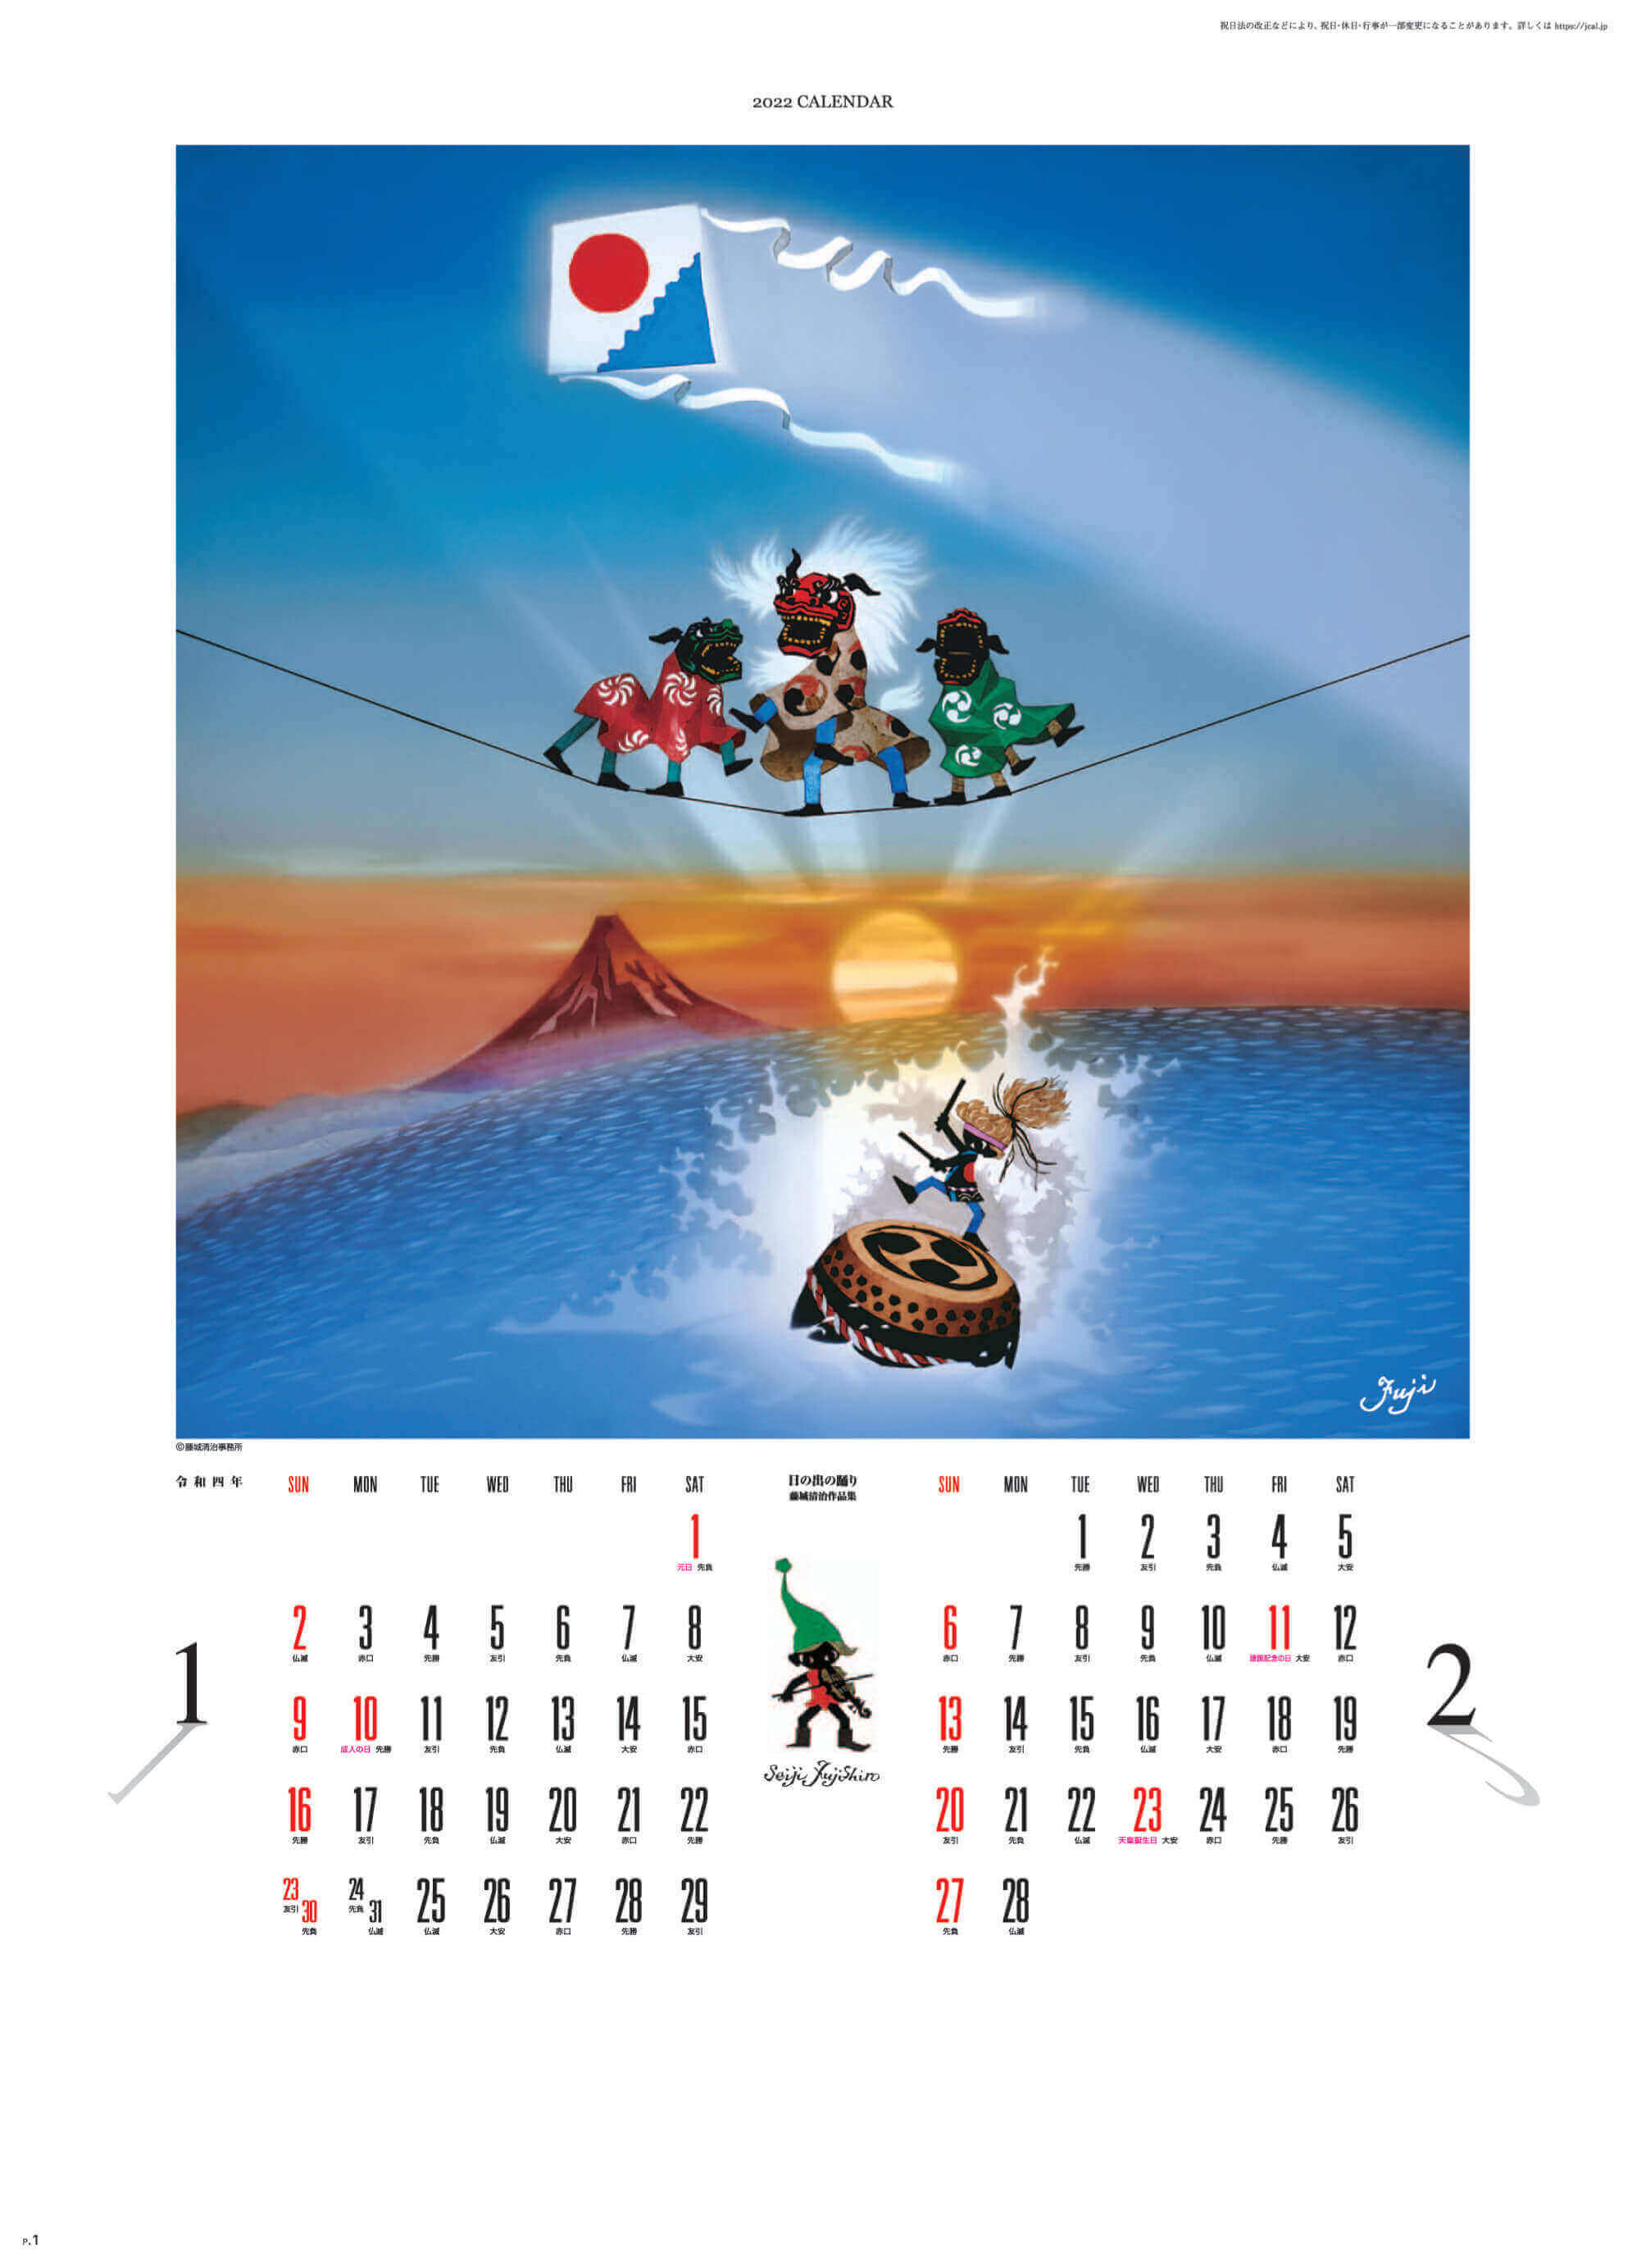 1-2月 日の出の踊り 遠い日の風景から(影絵) 藤城清治 2022年カレンダーの画像